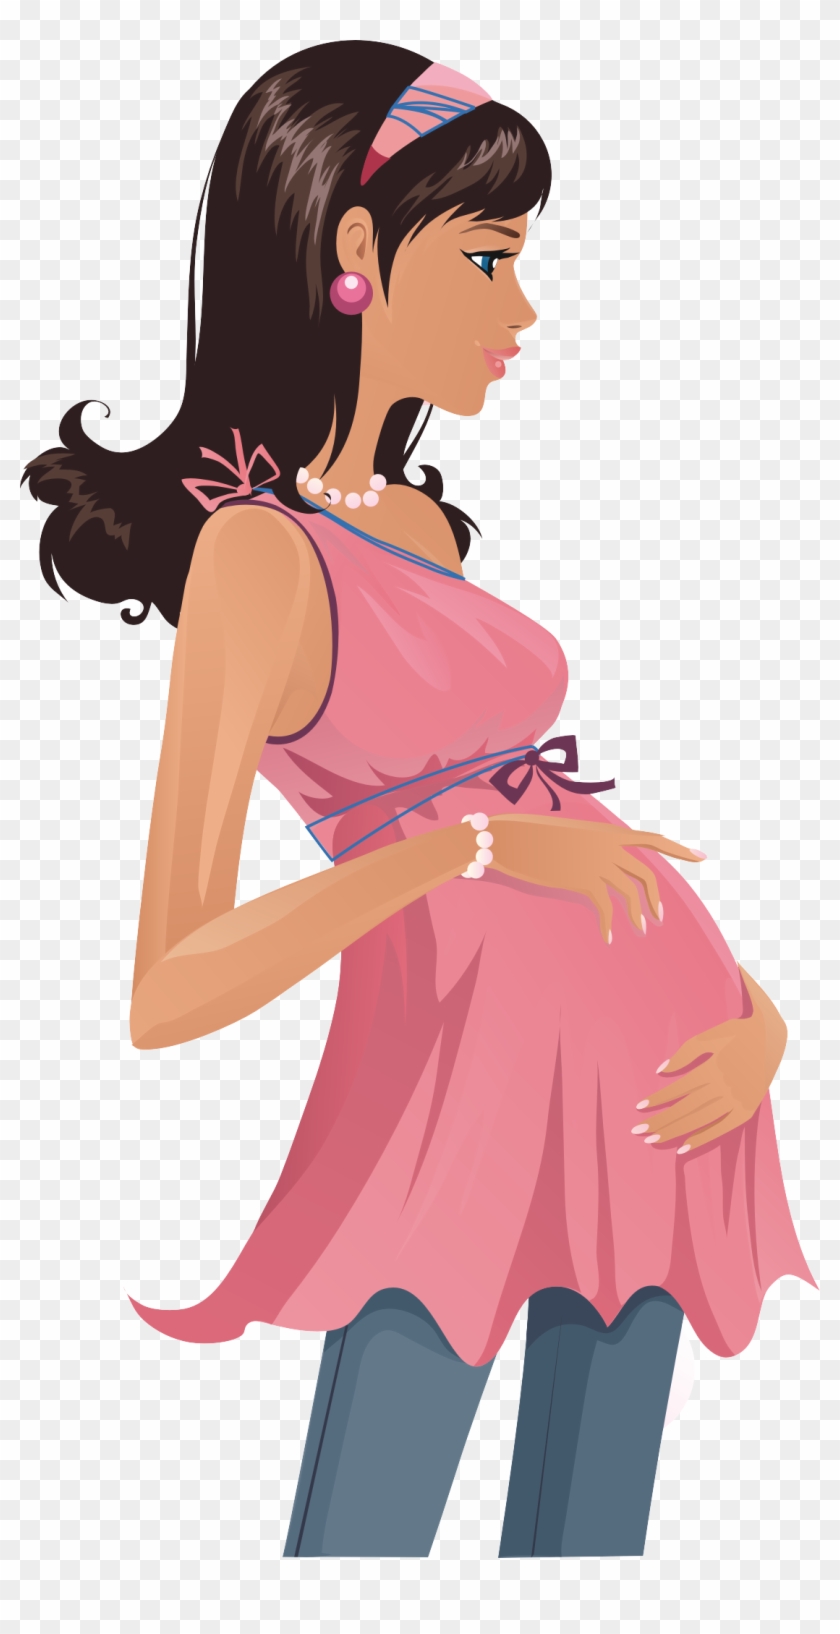 Teenage Pregnancy Woman Pregnancy Test - Teenage Pregnancy Woman Pregnancy Test #301971